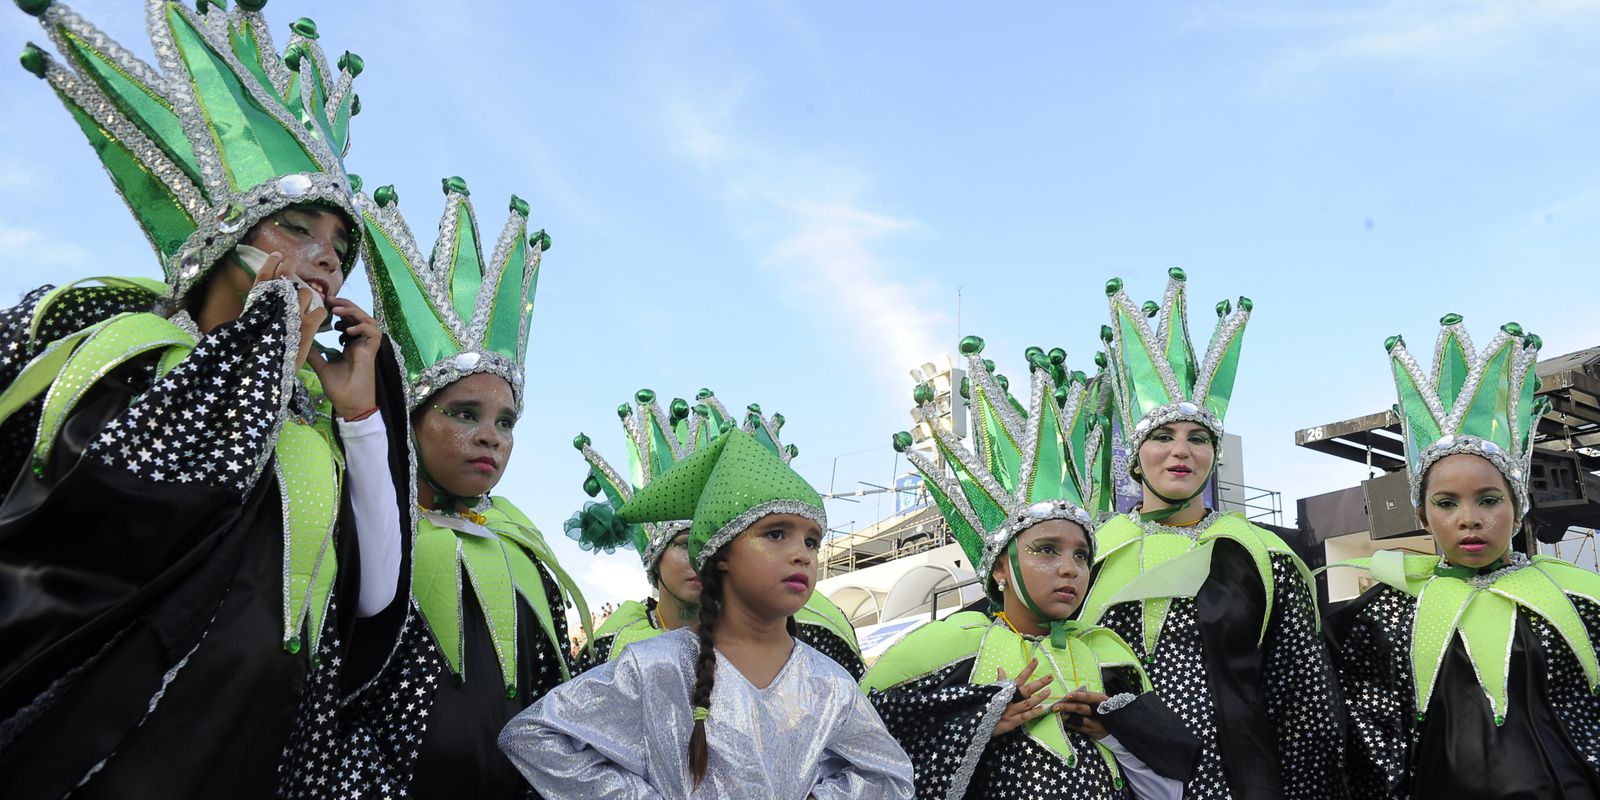 Children's samba schools close this carnival parades in Rio